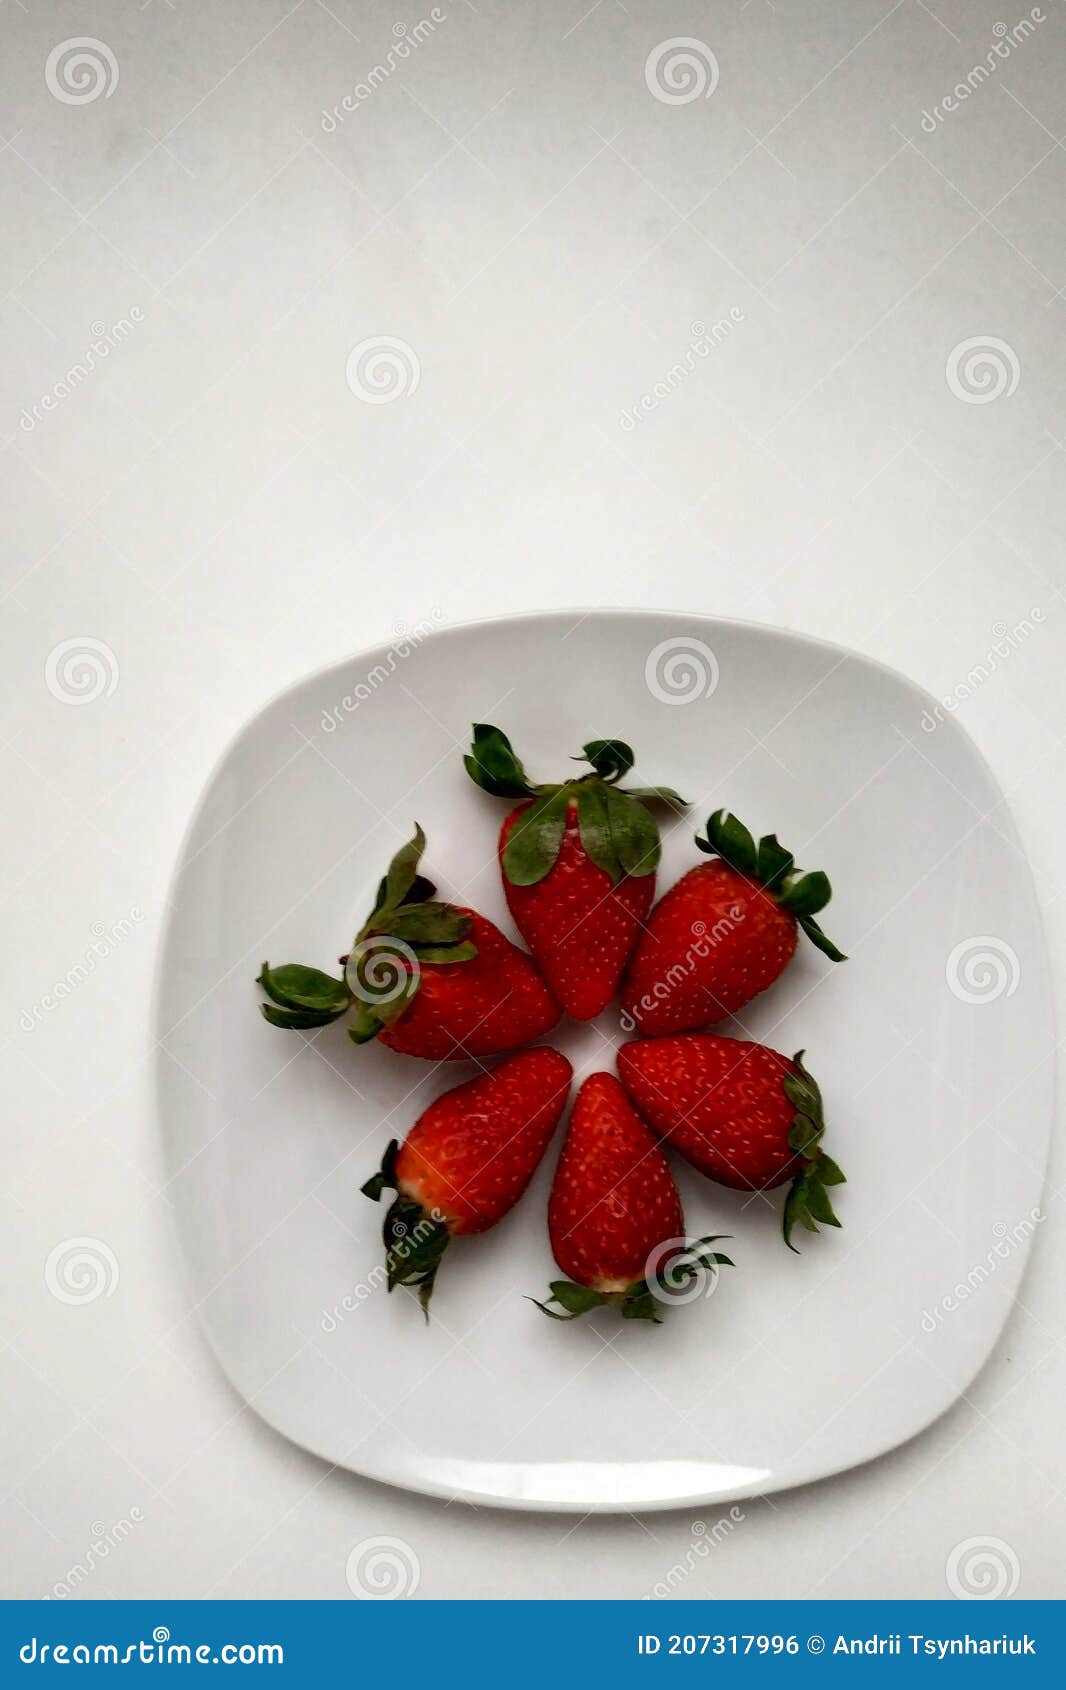 盘子里排列好的草莓图片_高清图片素材